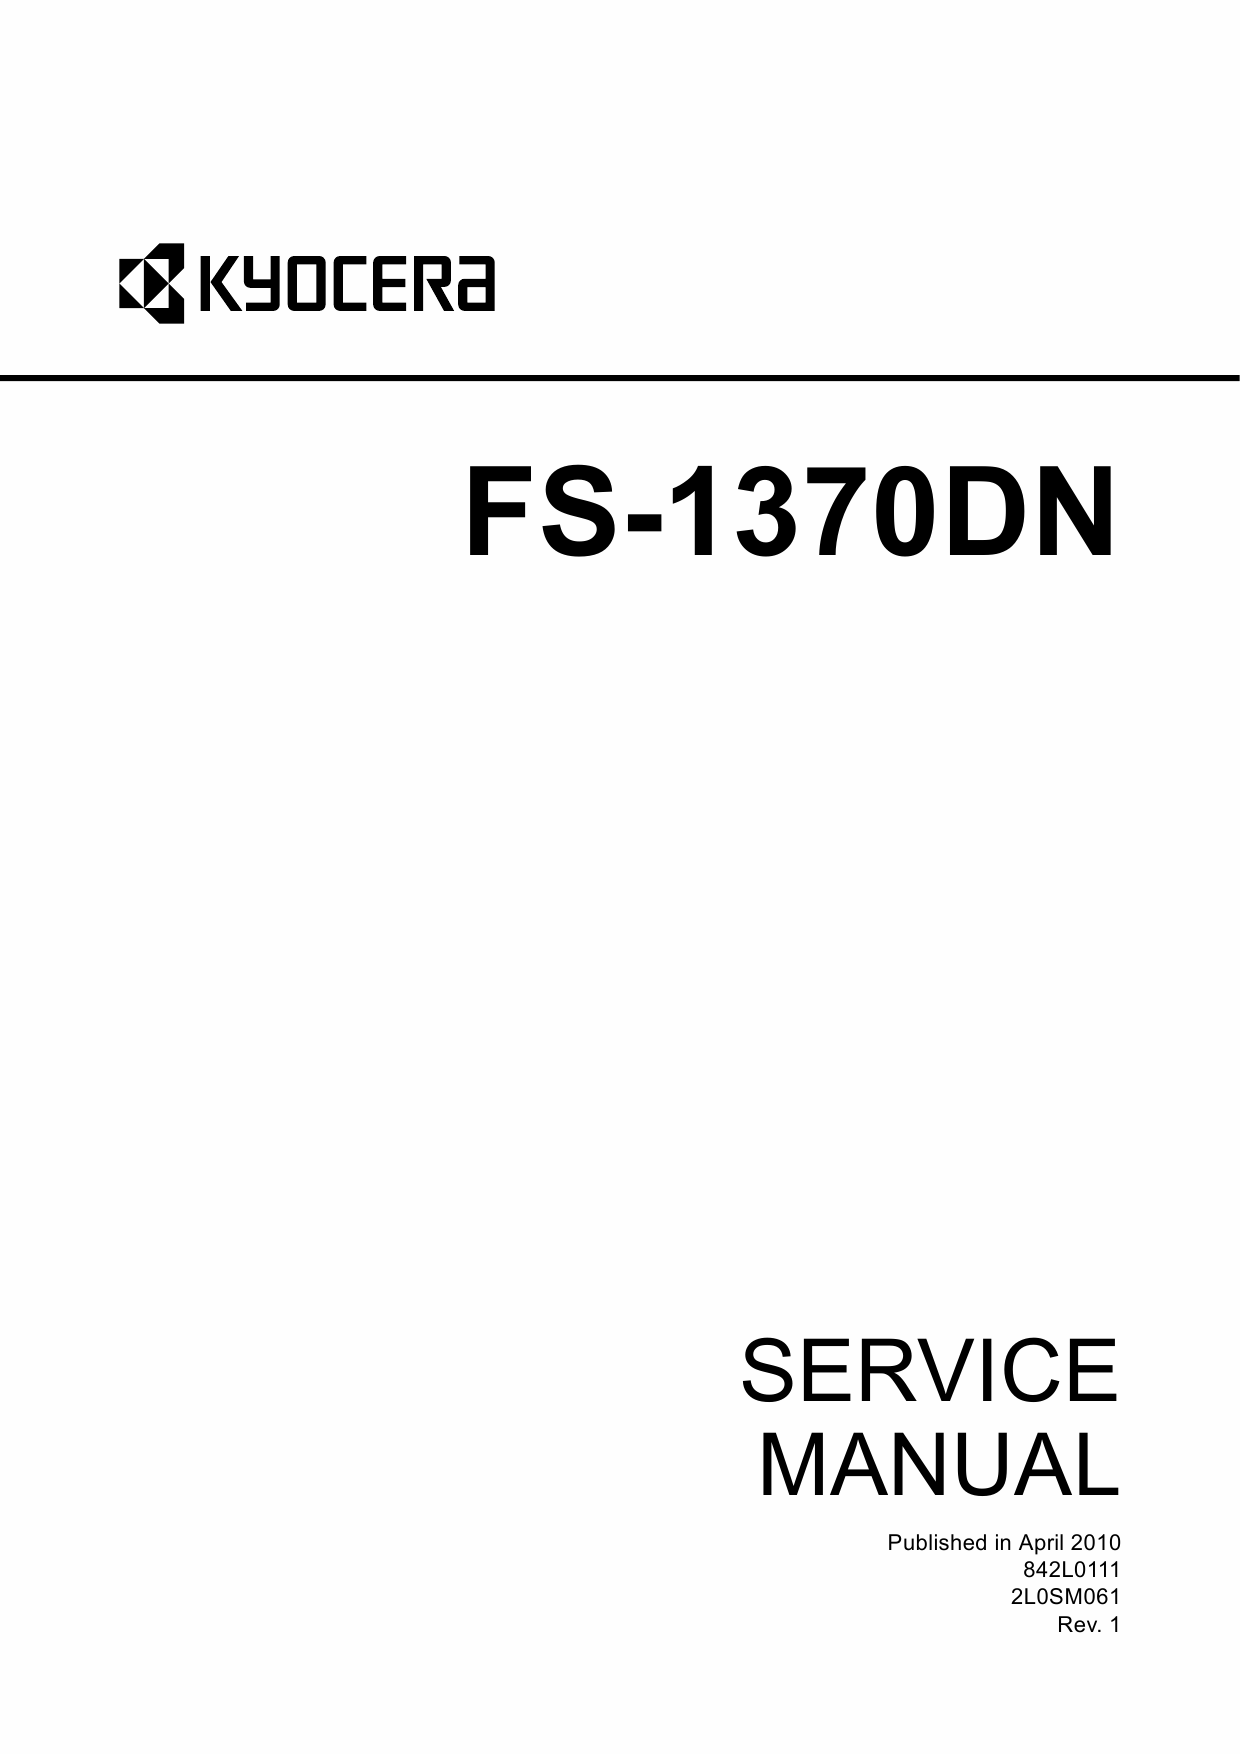 Kyocera service manual. Kyocera km-3650w. DN service.